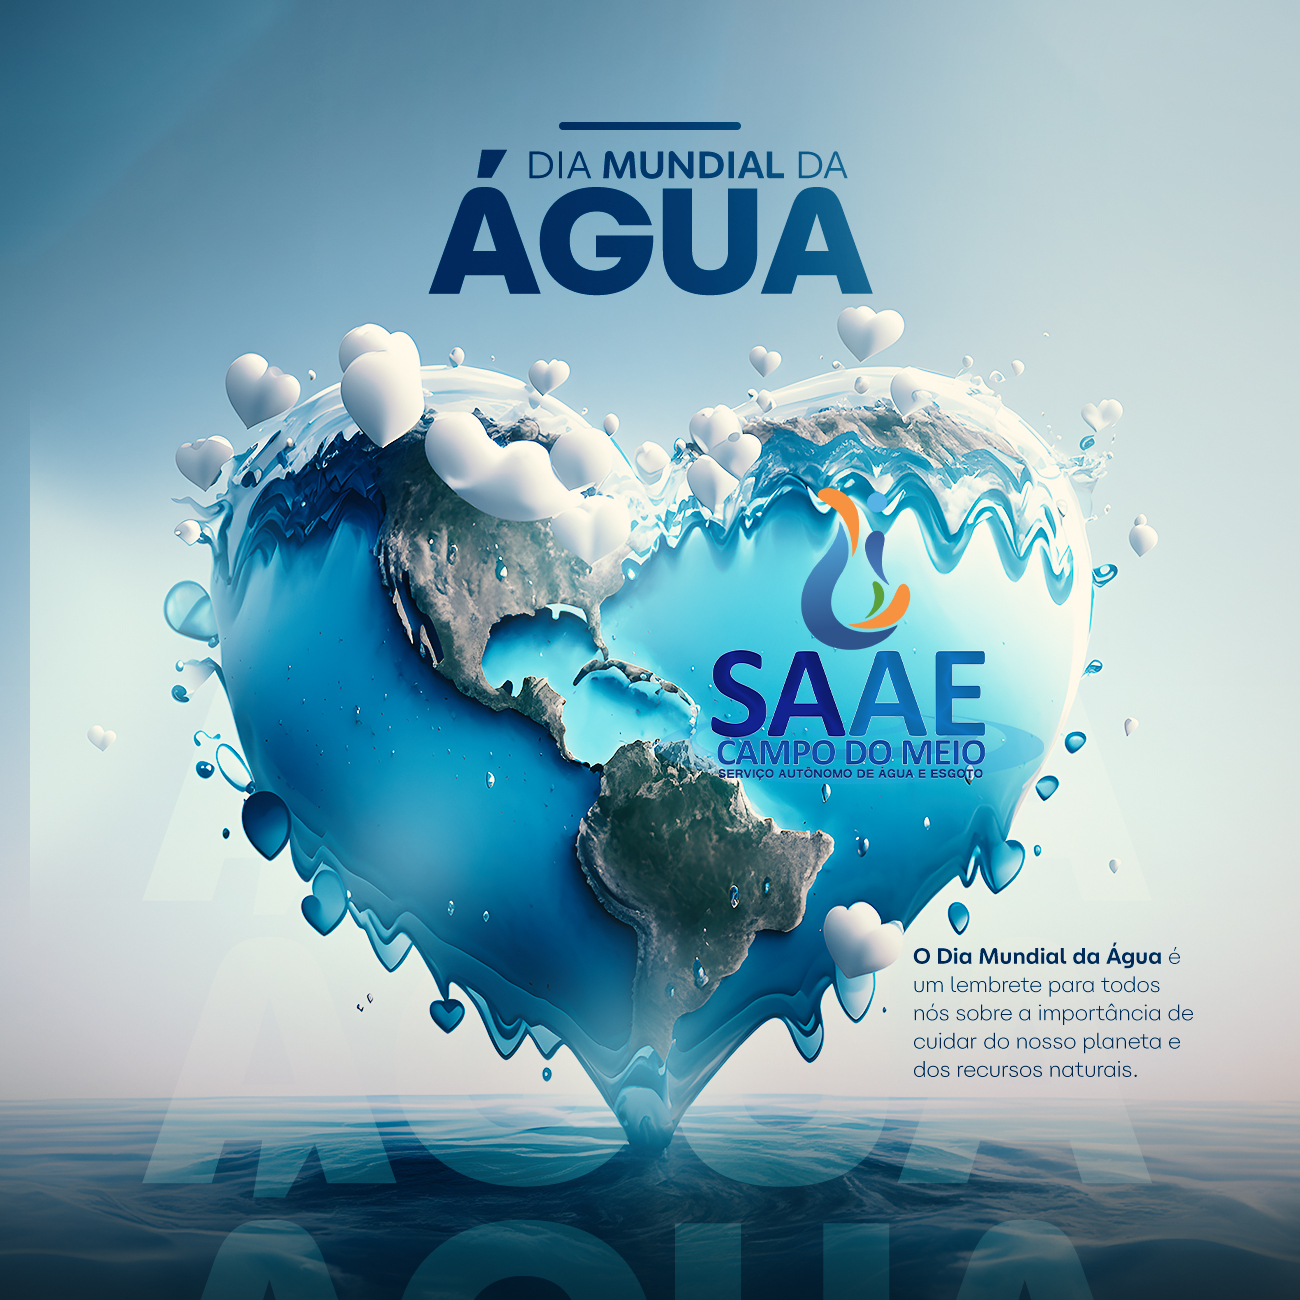 Hoje comemora-se o Dia Mundial da Água